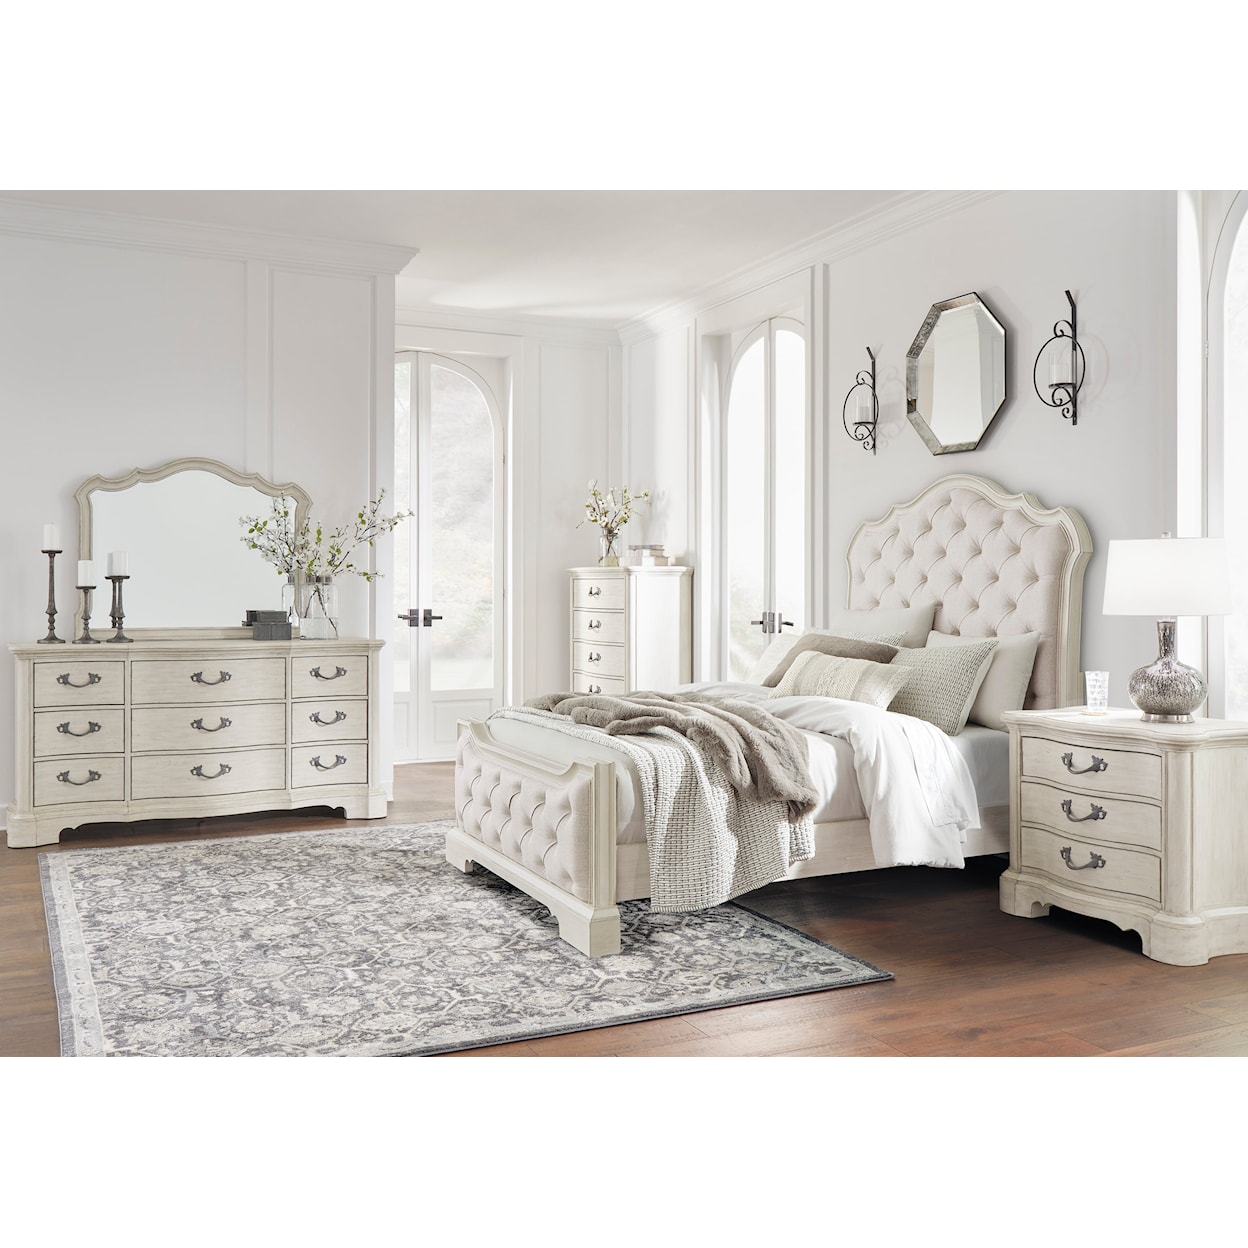 Benchcraft Arlendyne Queen Bedroom Set